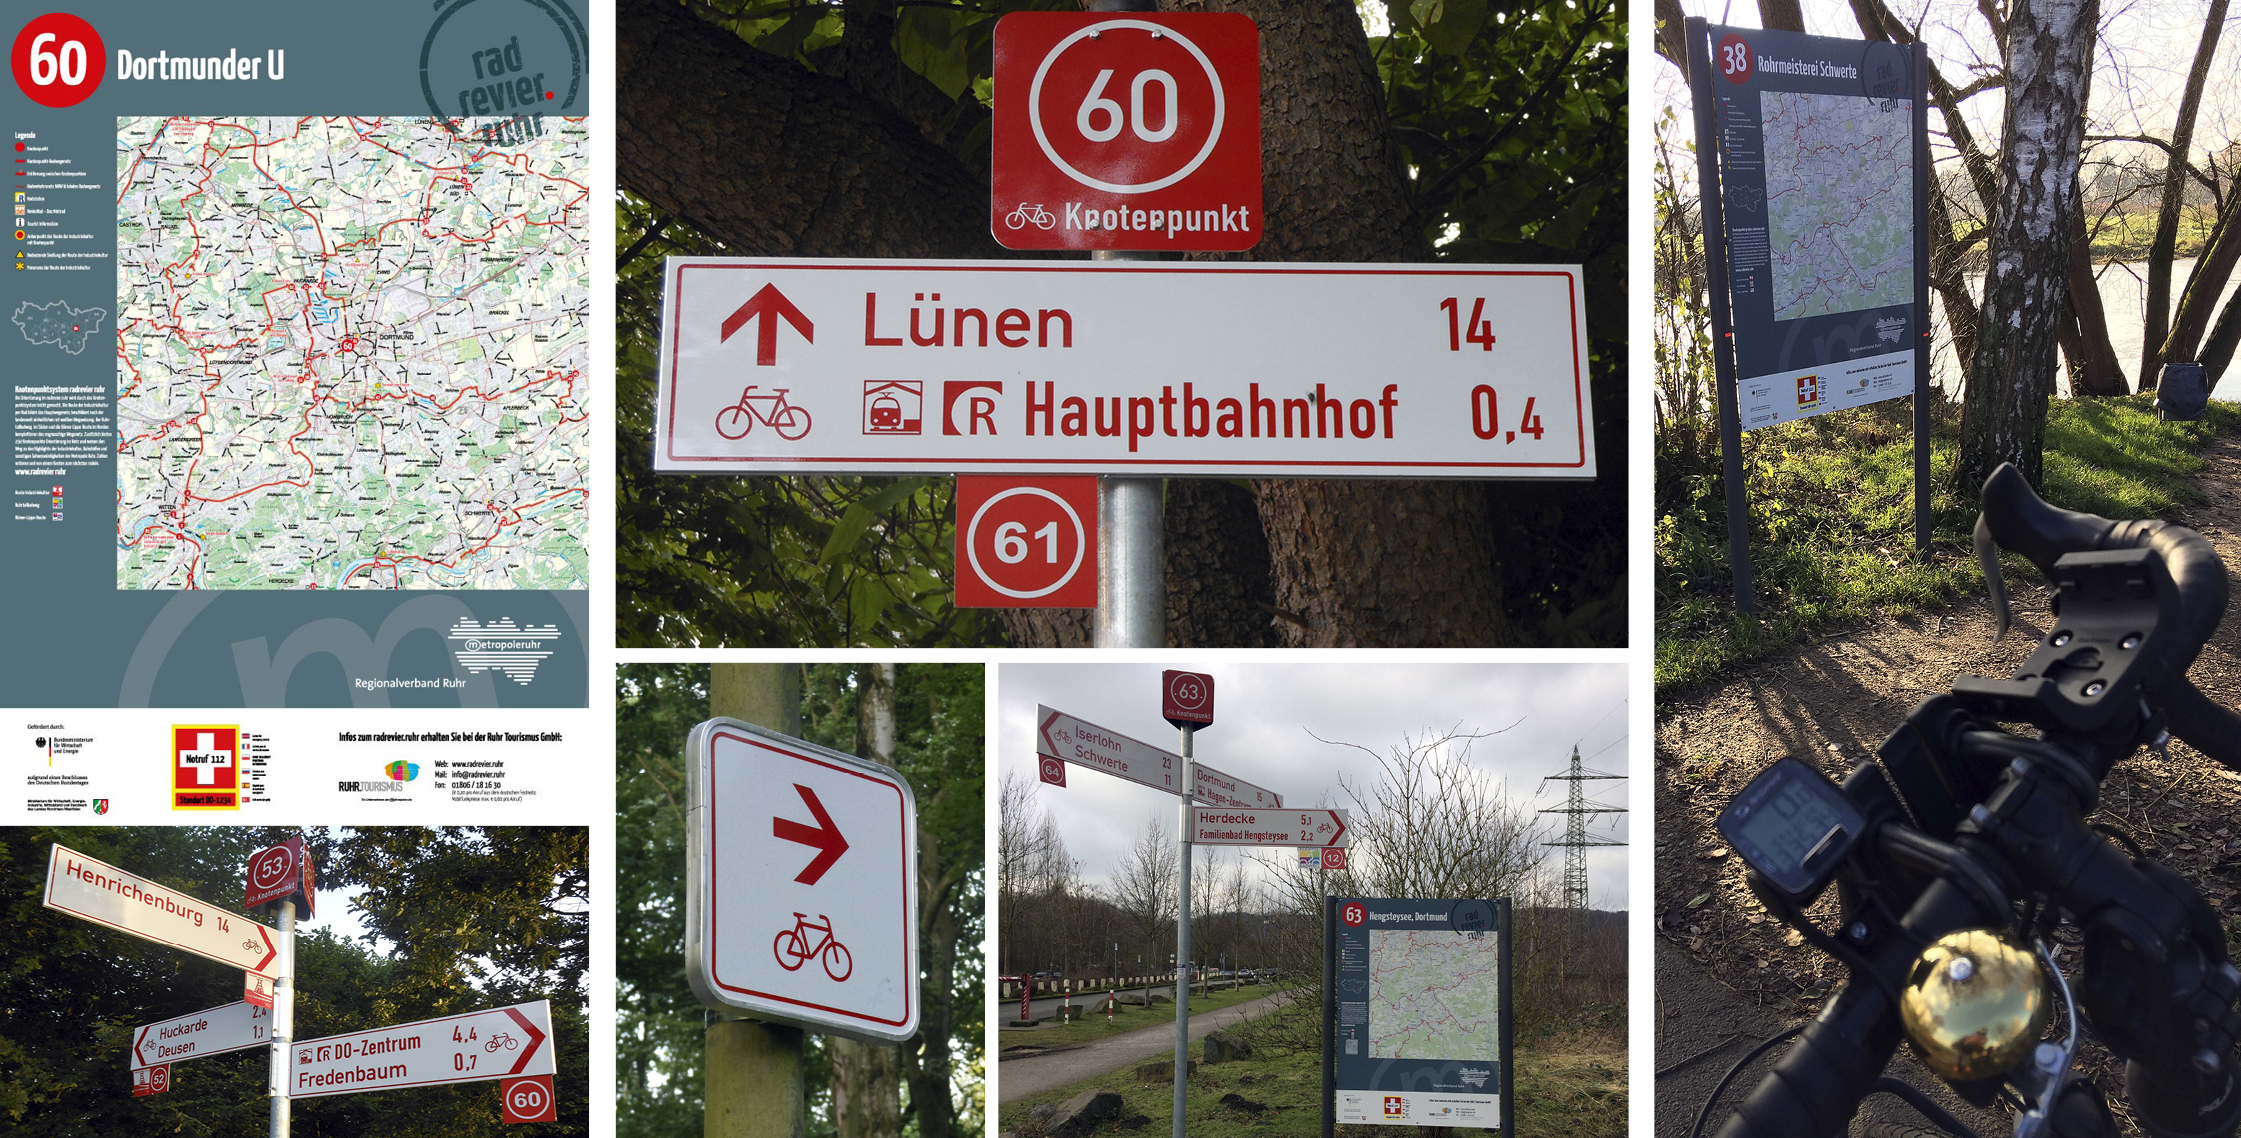 Bestens ausgeschildert: das Knotenpunktsystem der Metropole Ruhr.